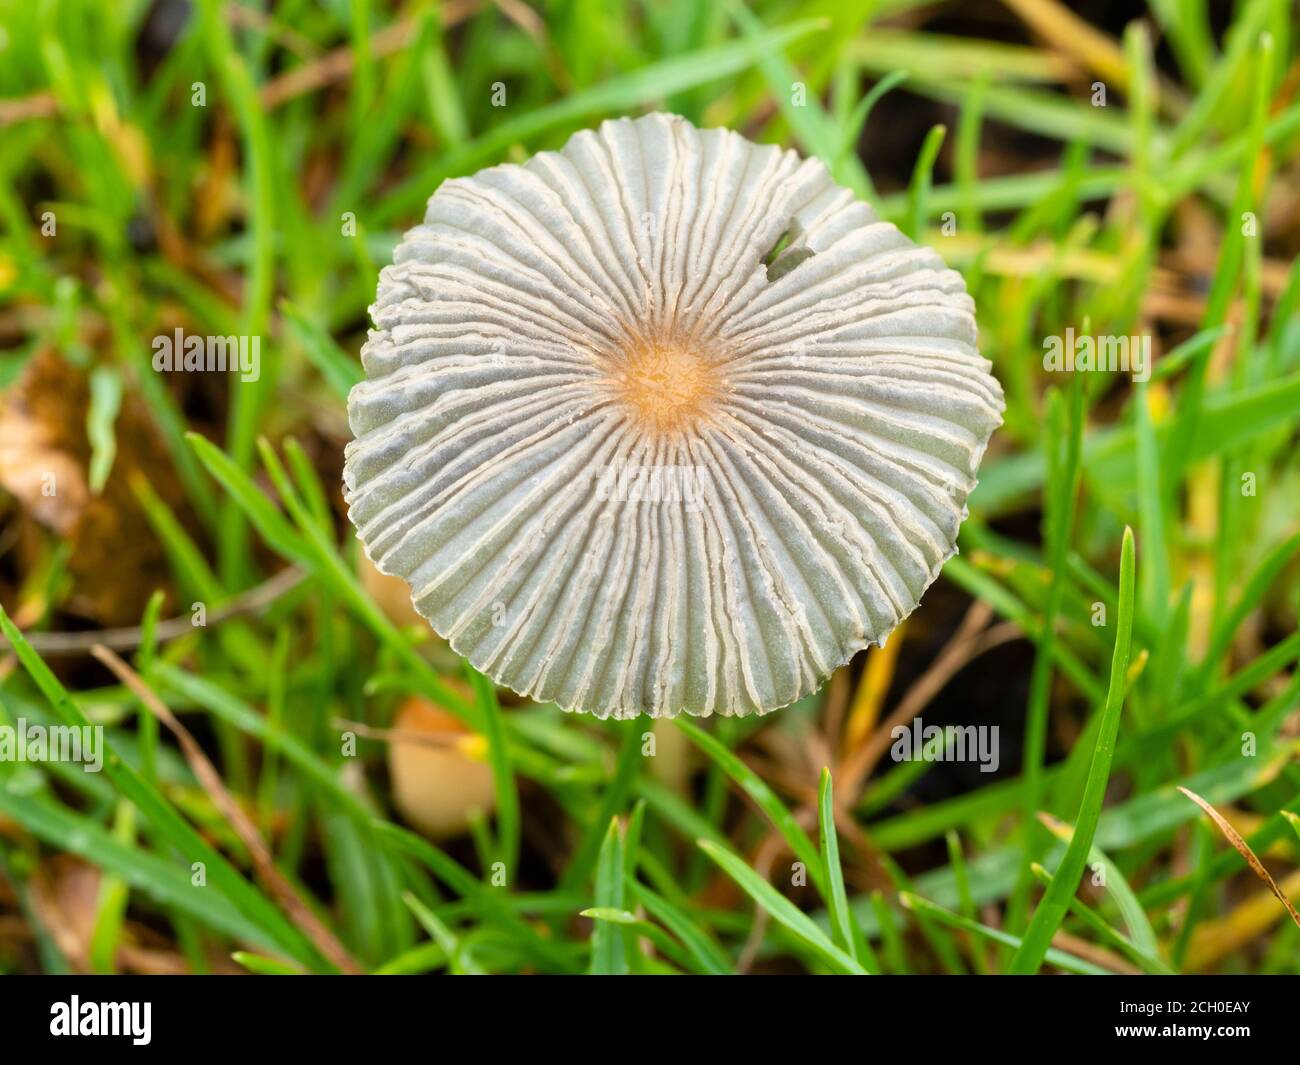 Nahaufnahme des ephemeren Fruchtkörpers des Pliated Inkcap Toadstool, Parasola plicatilis, auf einem britischen Grasrand Stockfoto